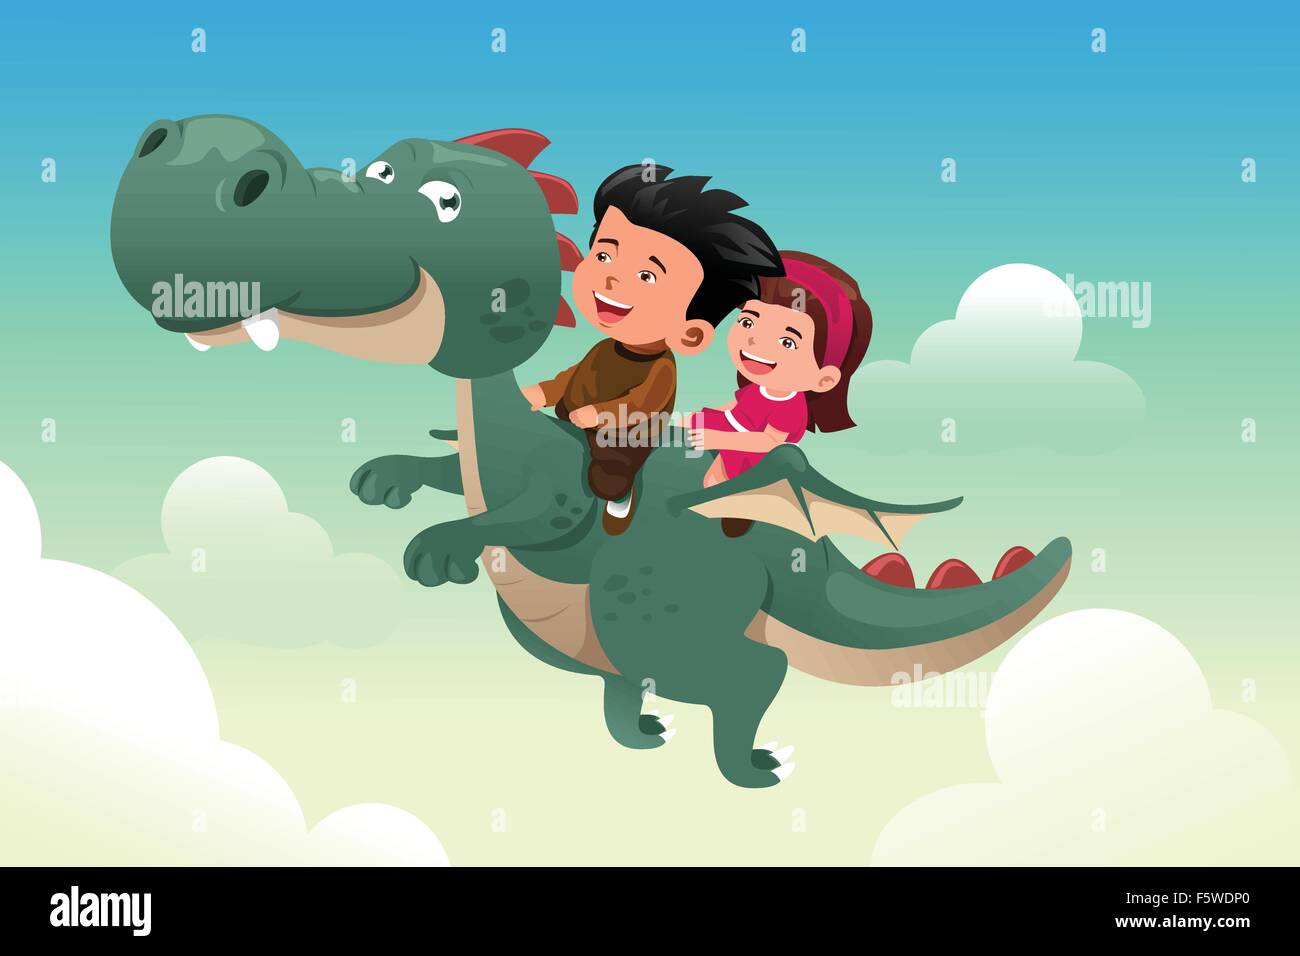 Eine Vektor-Illustration der glückliche Kinder reiten auf einem niedlichen Drachen Stock Vektor